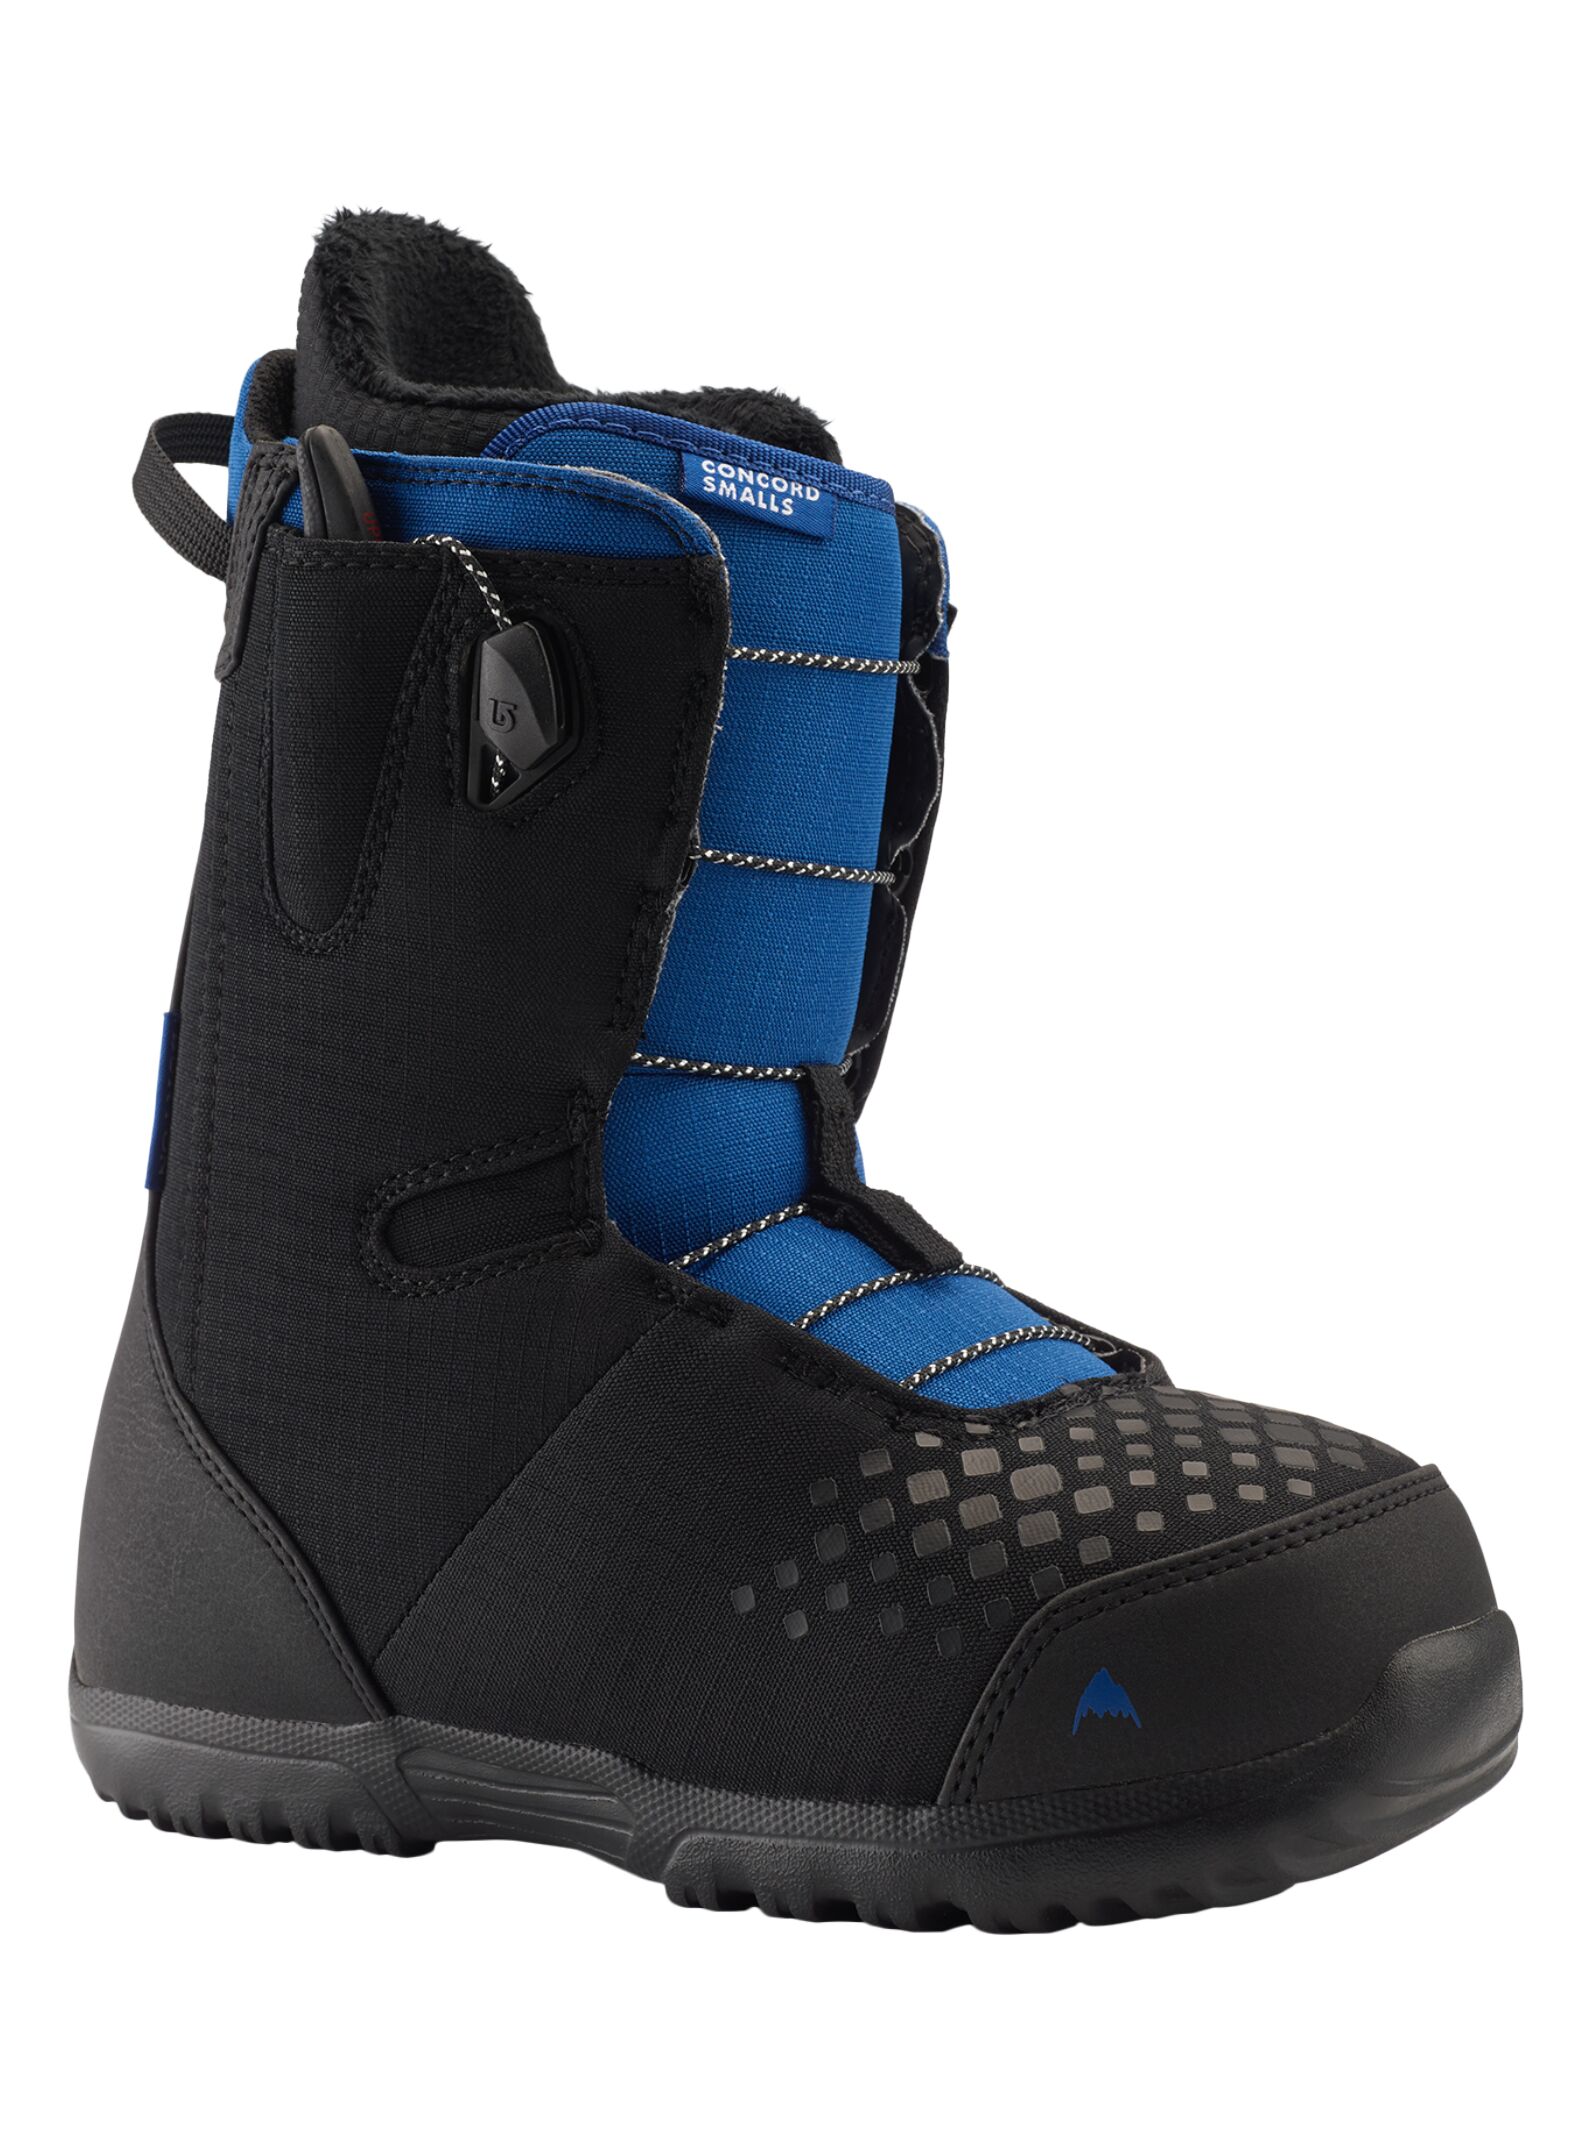 Burton Concord Smalls kids snowboard boots black / blue